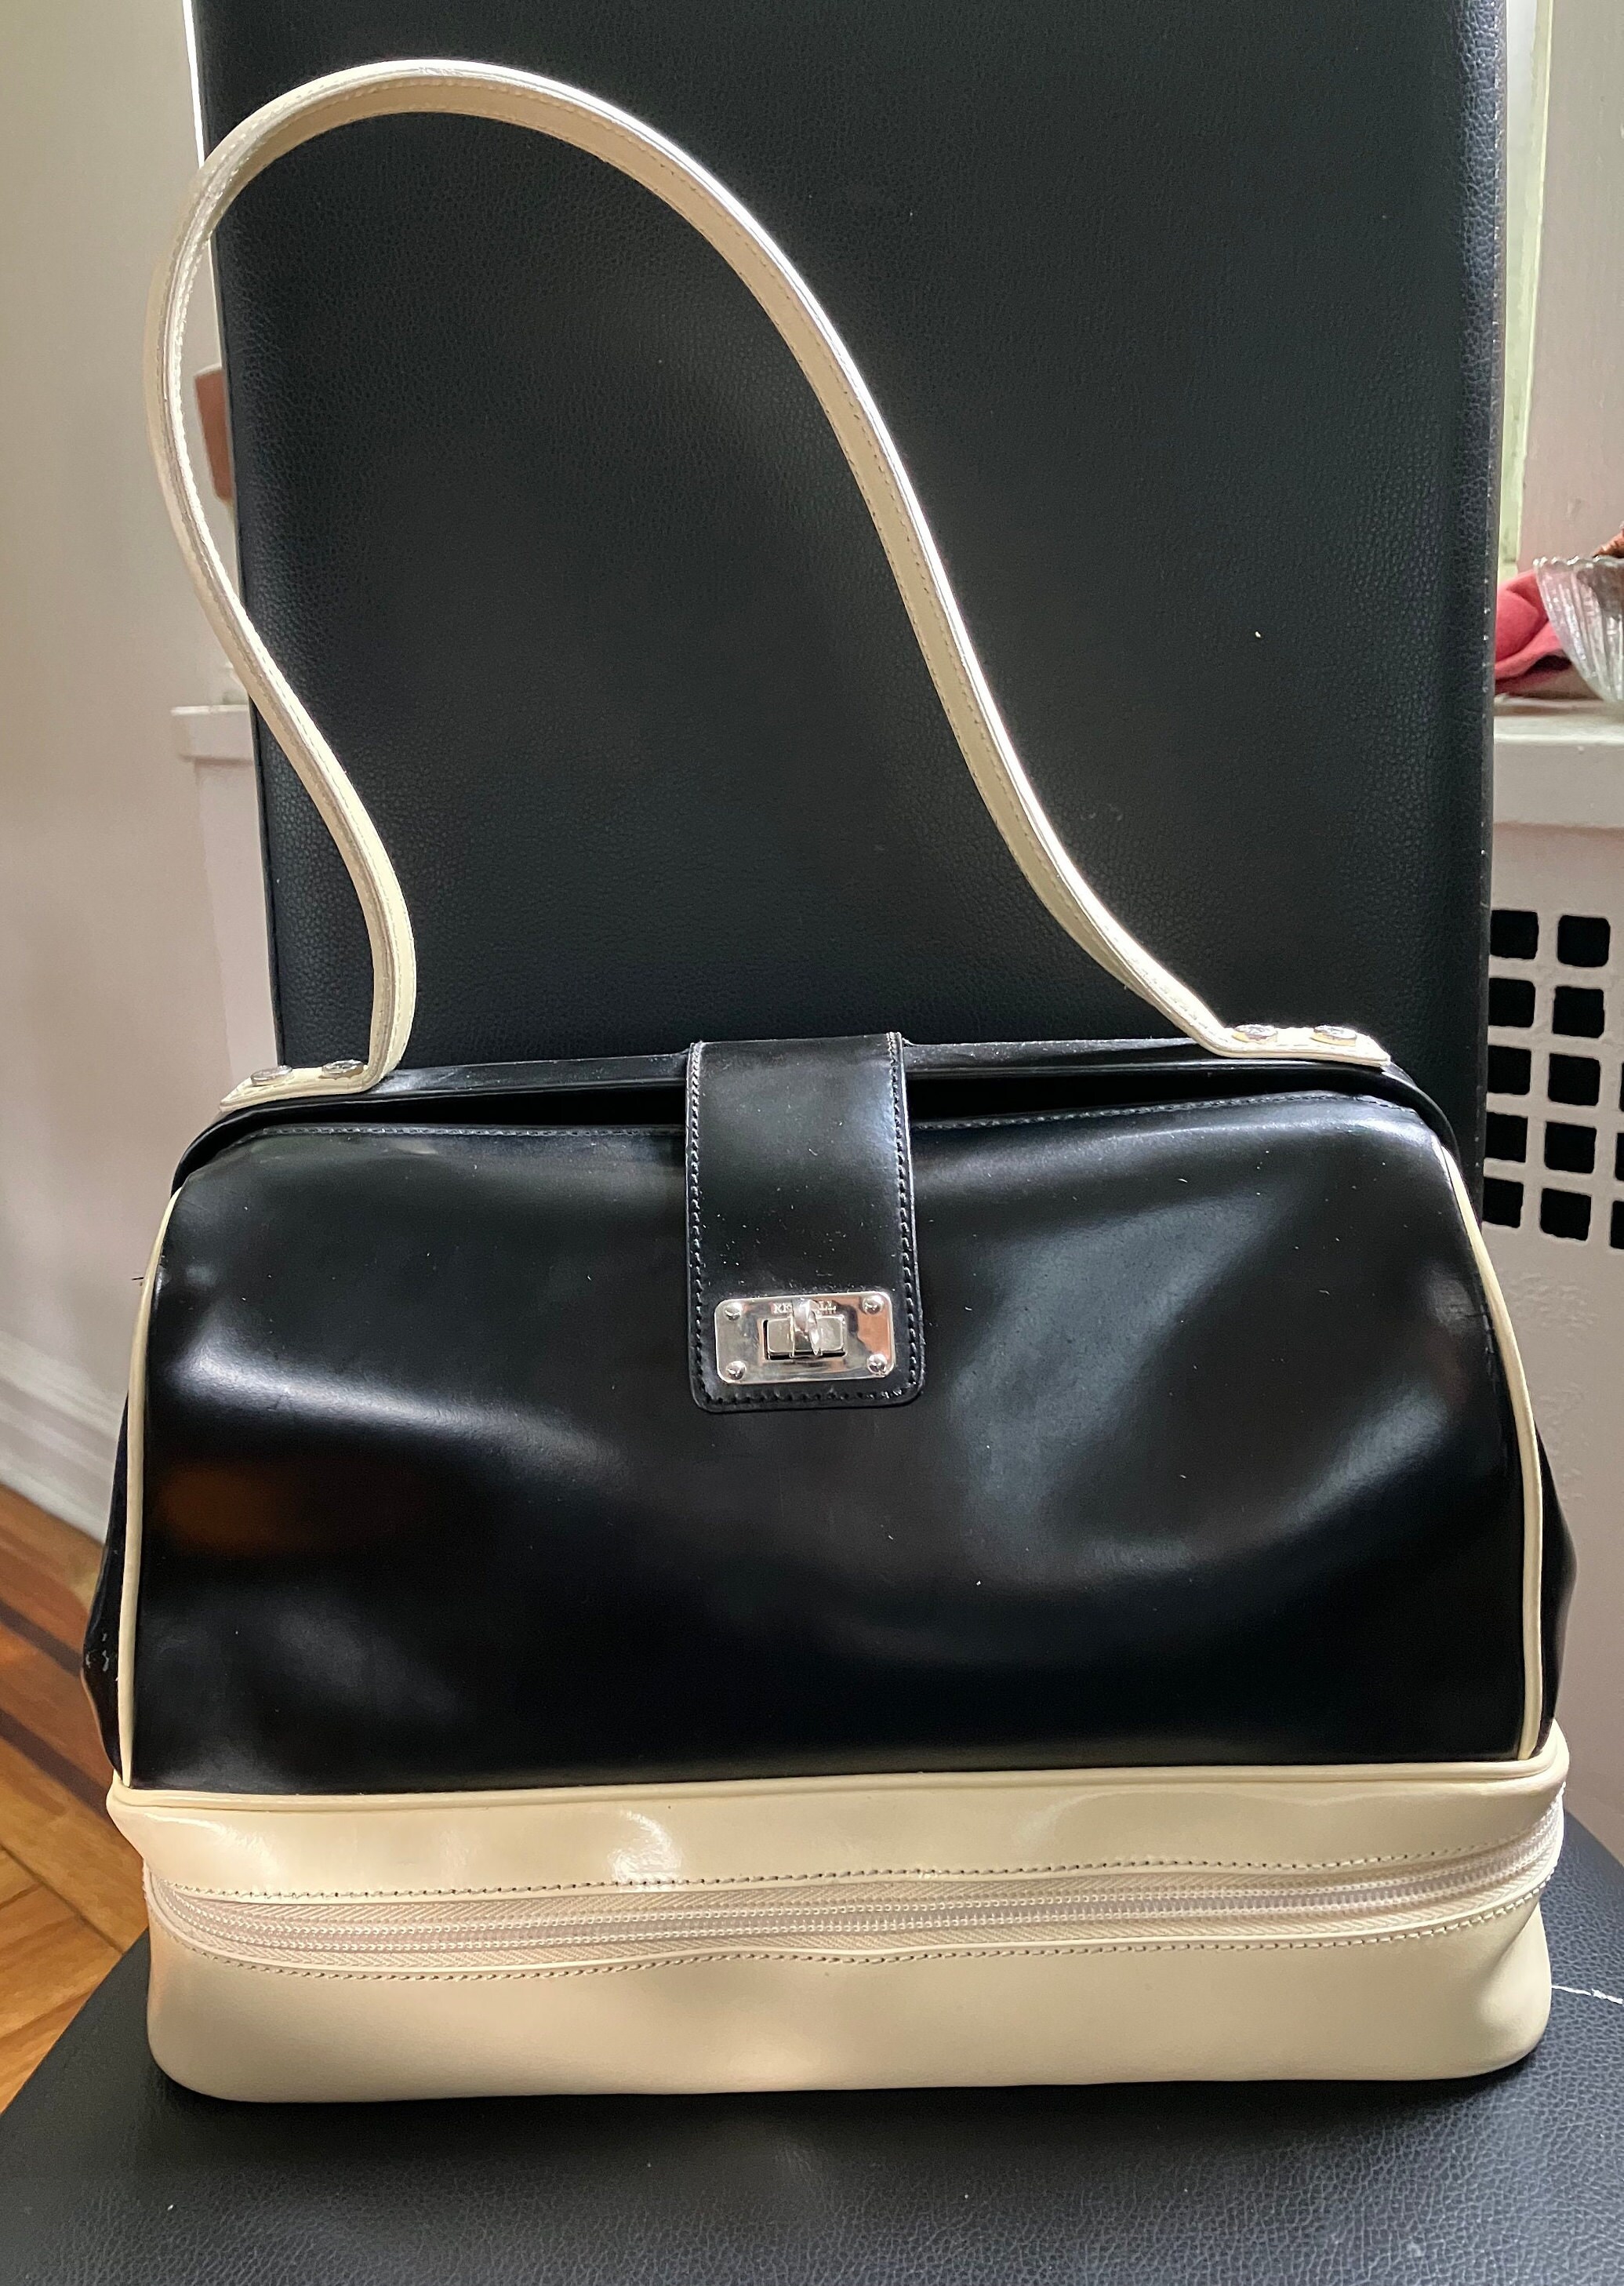 Prada Pebbled Leather Med/Large Tote Doctor's Bag Handbag Pre-loved